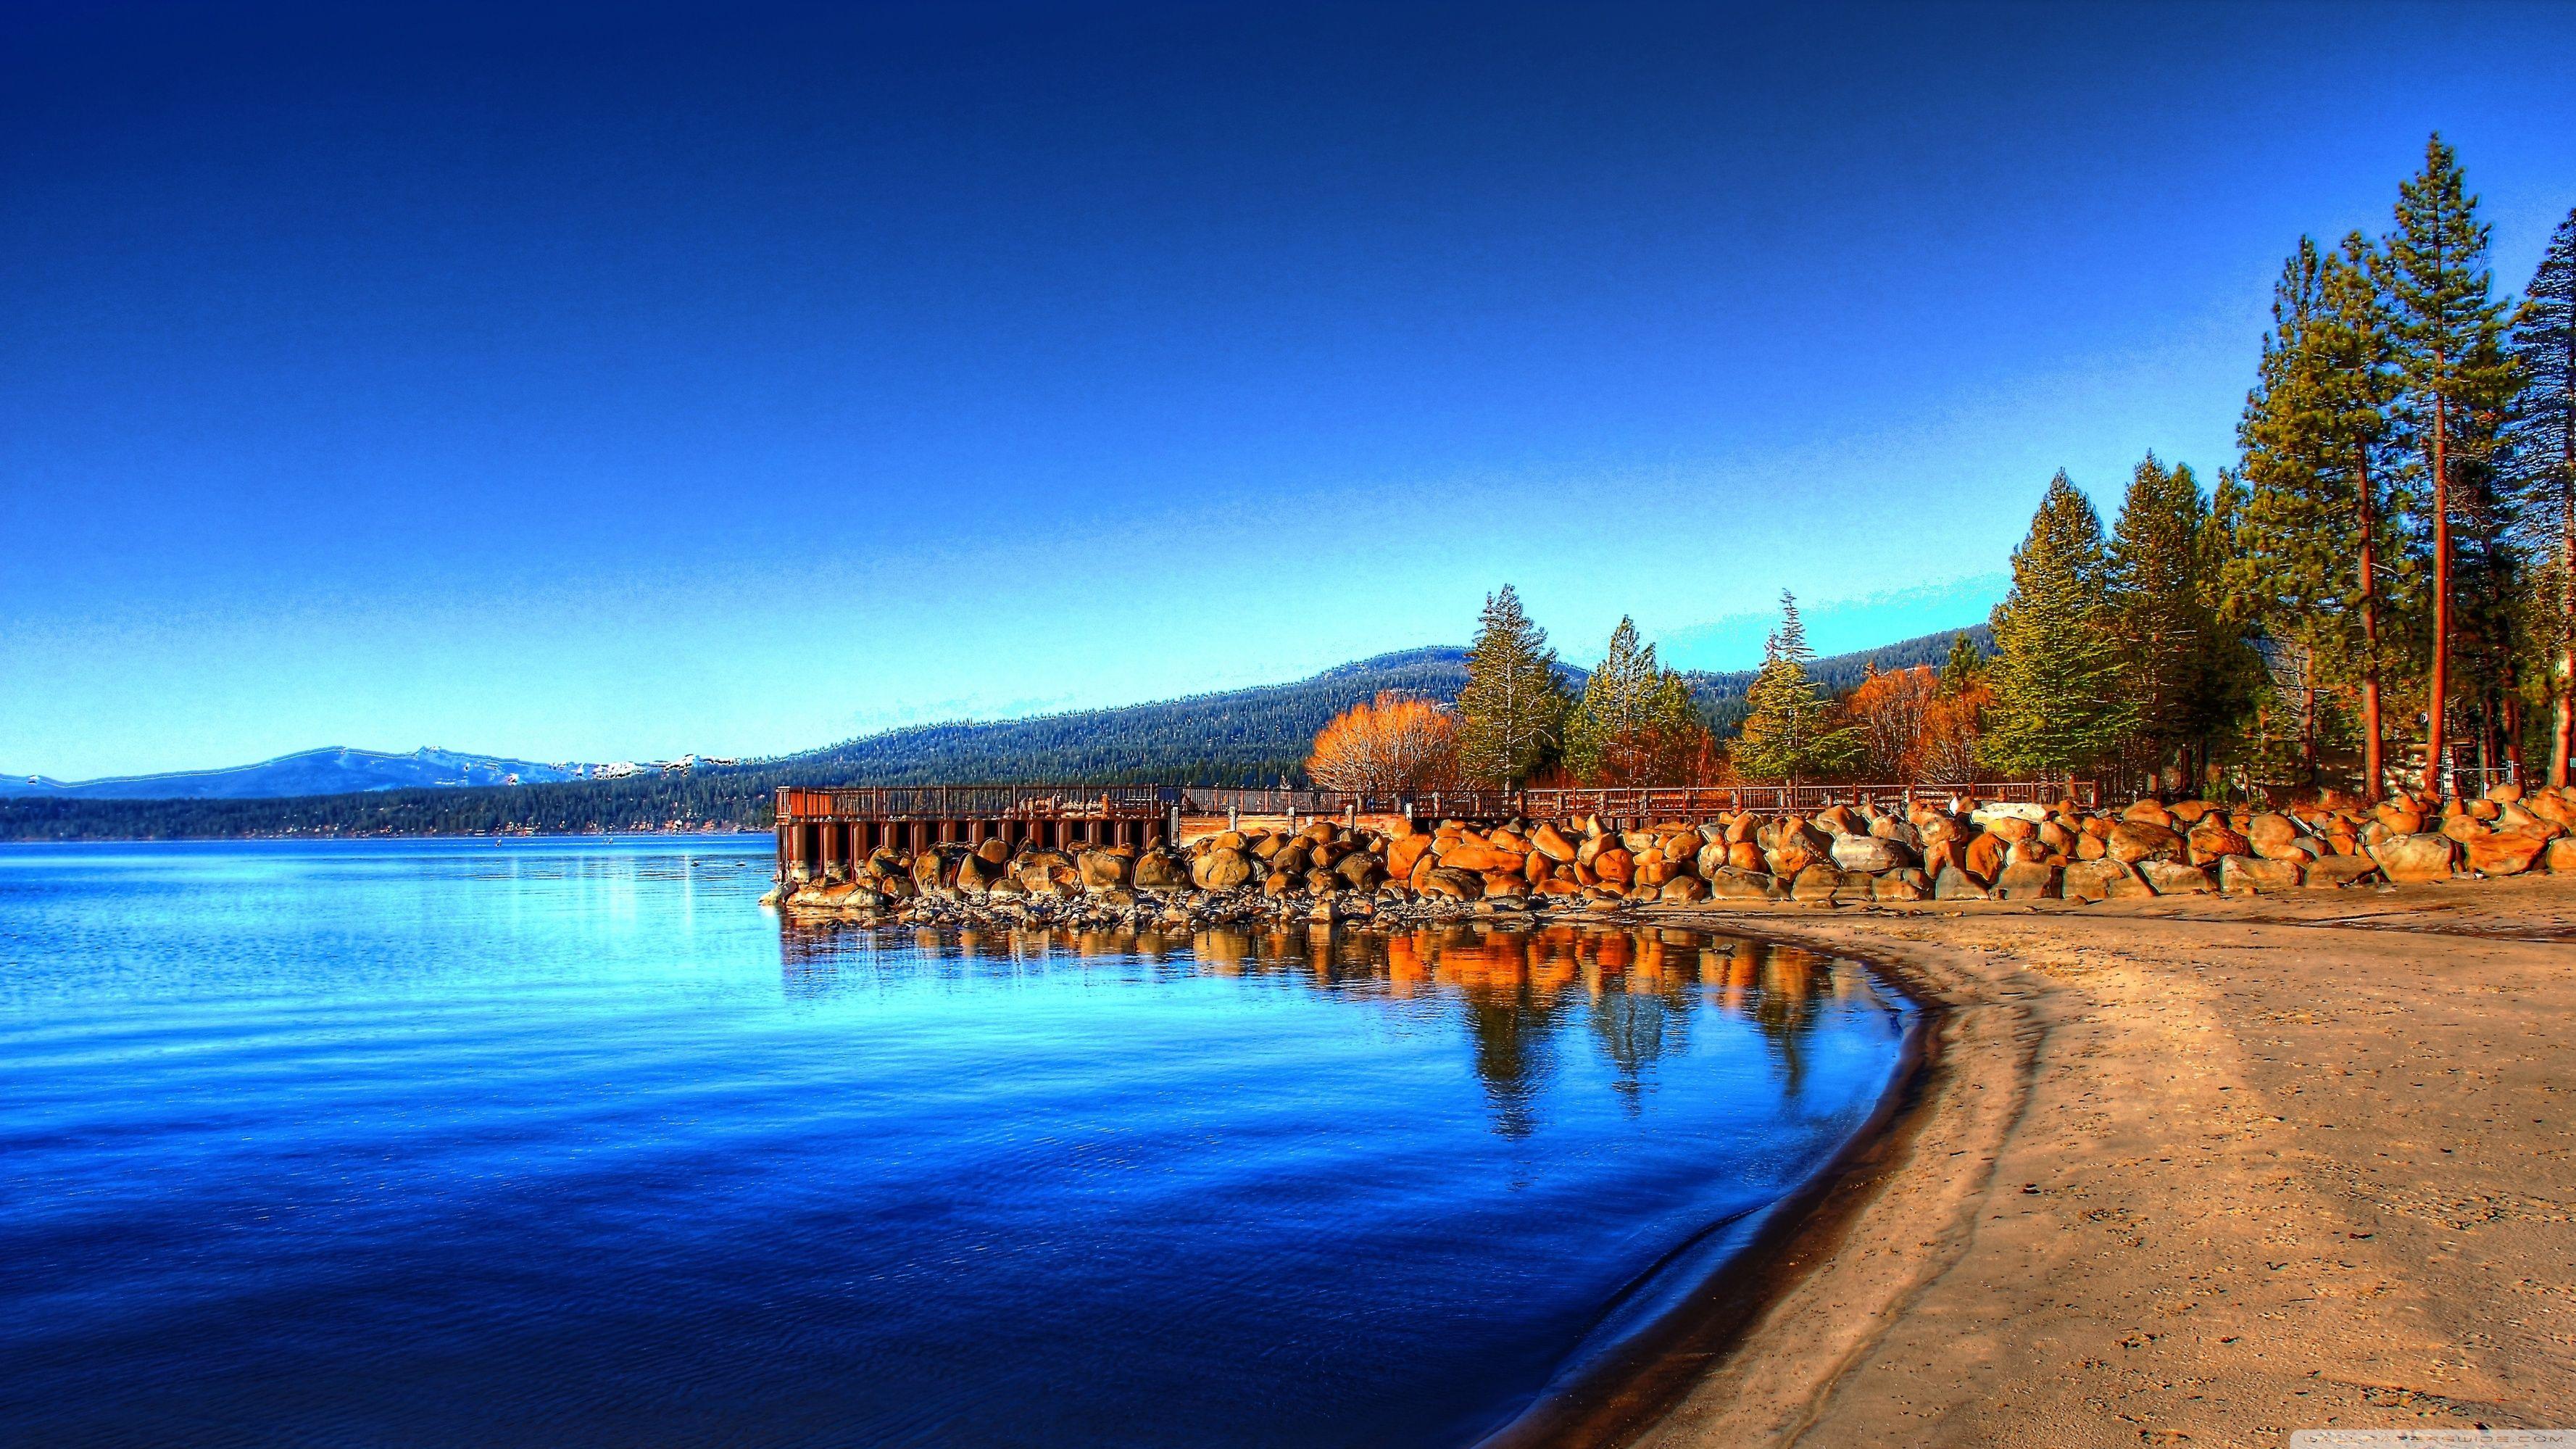 Hãy khám phá cảnh đẹp thiên nhiên tuyệt vời của hồ Tahoe thông qua bức ảnh 4K này. Với bầu trời xanh trong veo, nước hồ trong xanh và núi non bao quanh, hình nền này sẽ khiến bạn cảm thấy sảng khoái và thư giãn không thể tả. Hãy tải xuống ngay để có trải nghiệm tuyệt vời này!